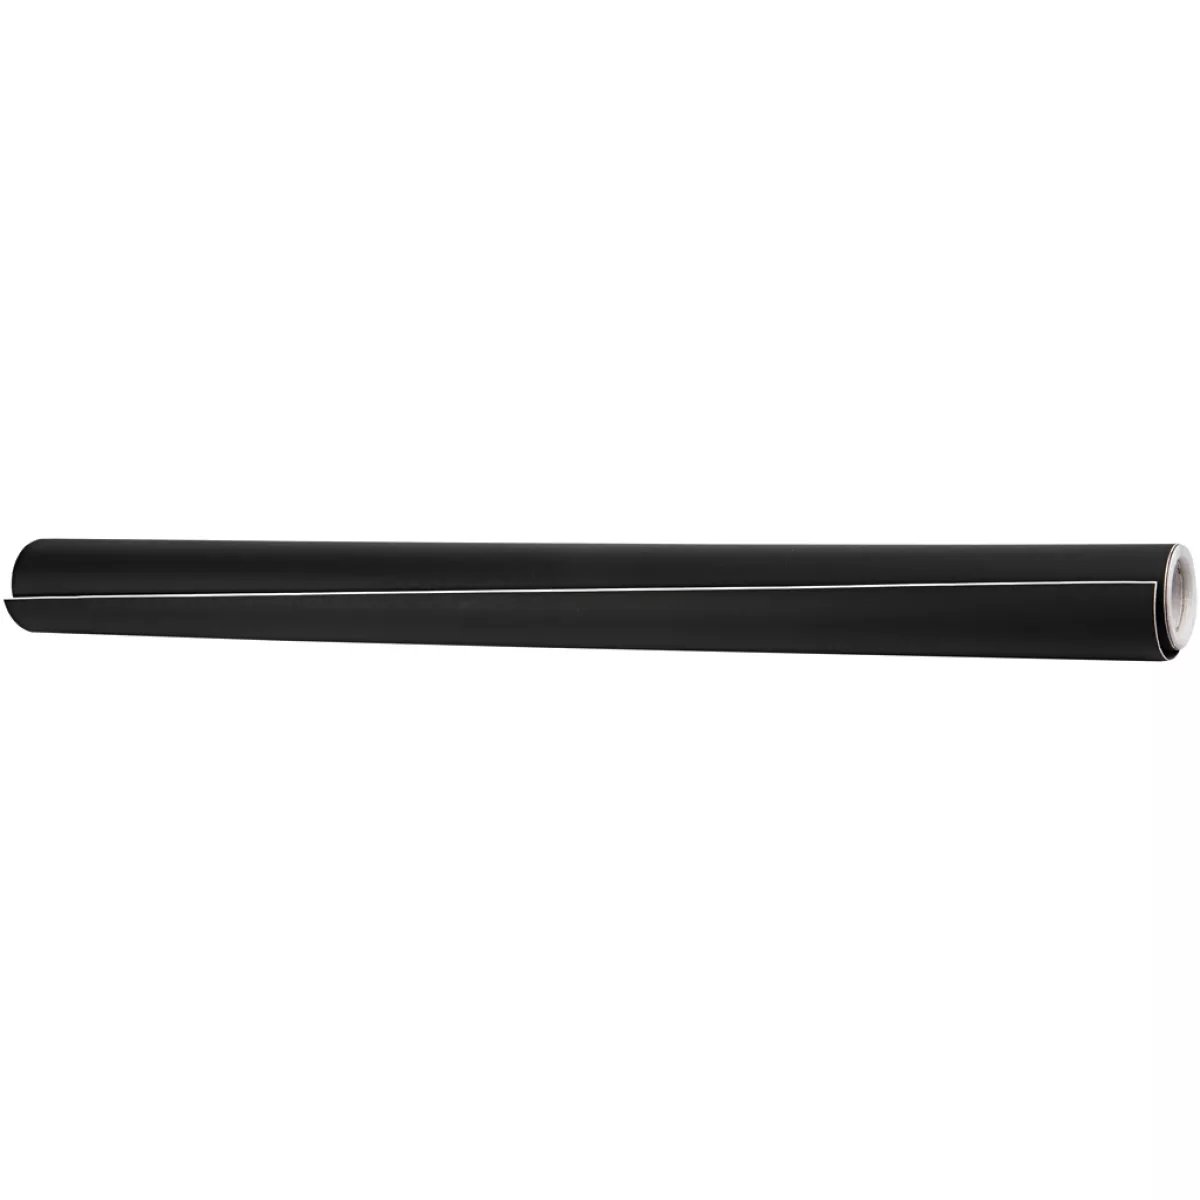 #1 - Tavlefolie til kridttavle, B: 45 cm, sort, 2 m/ 1 rl.